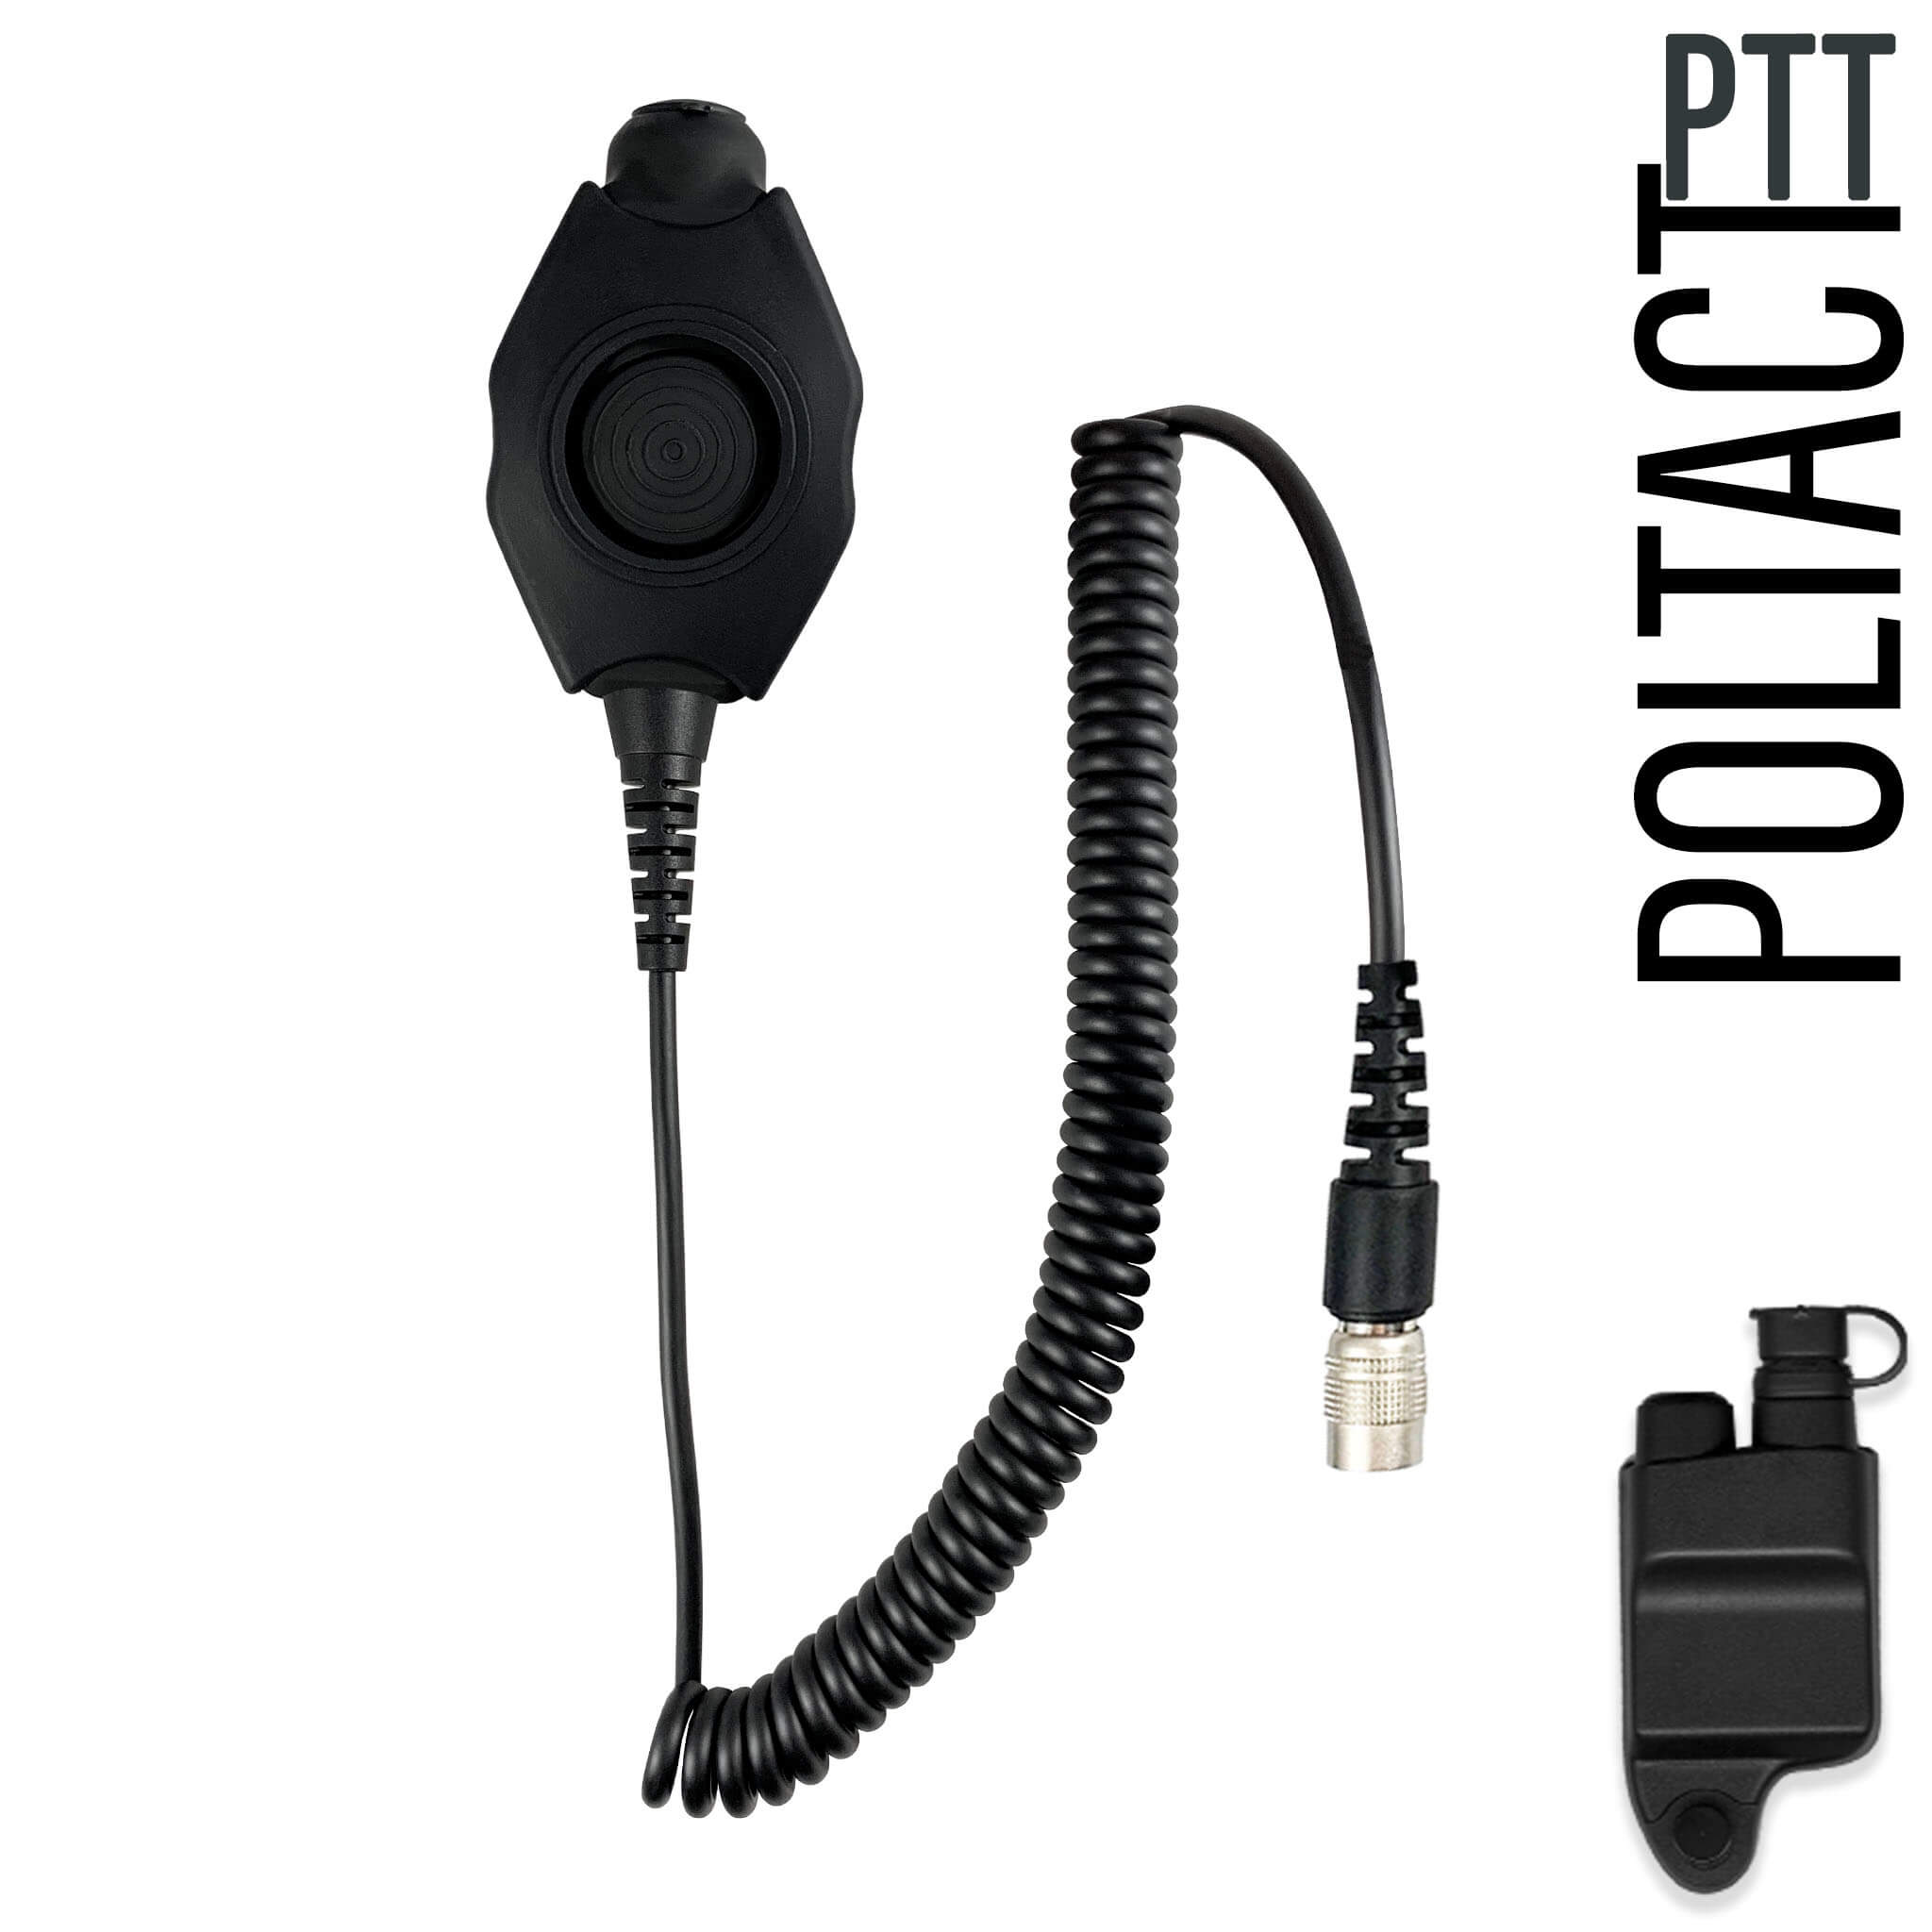 3M (FL5035-02) Push-to-Talk (PTT) Adapter FL5035-02 - 5